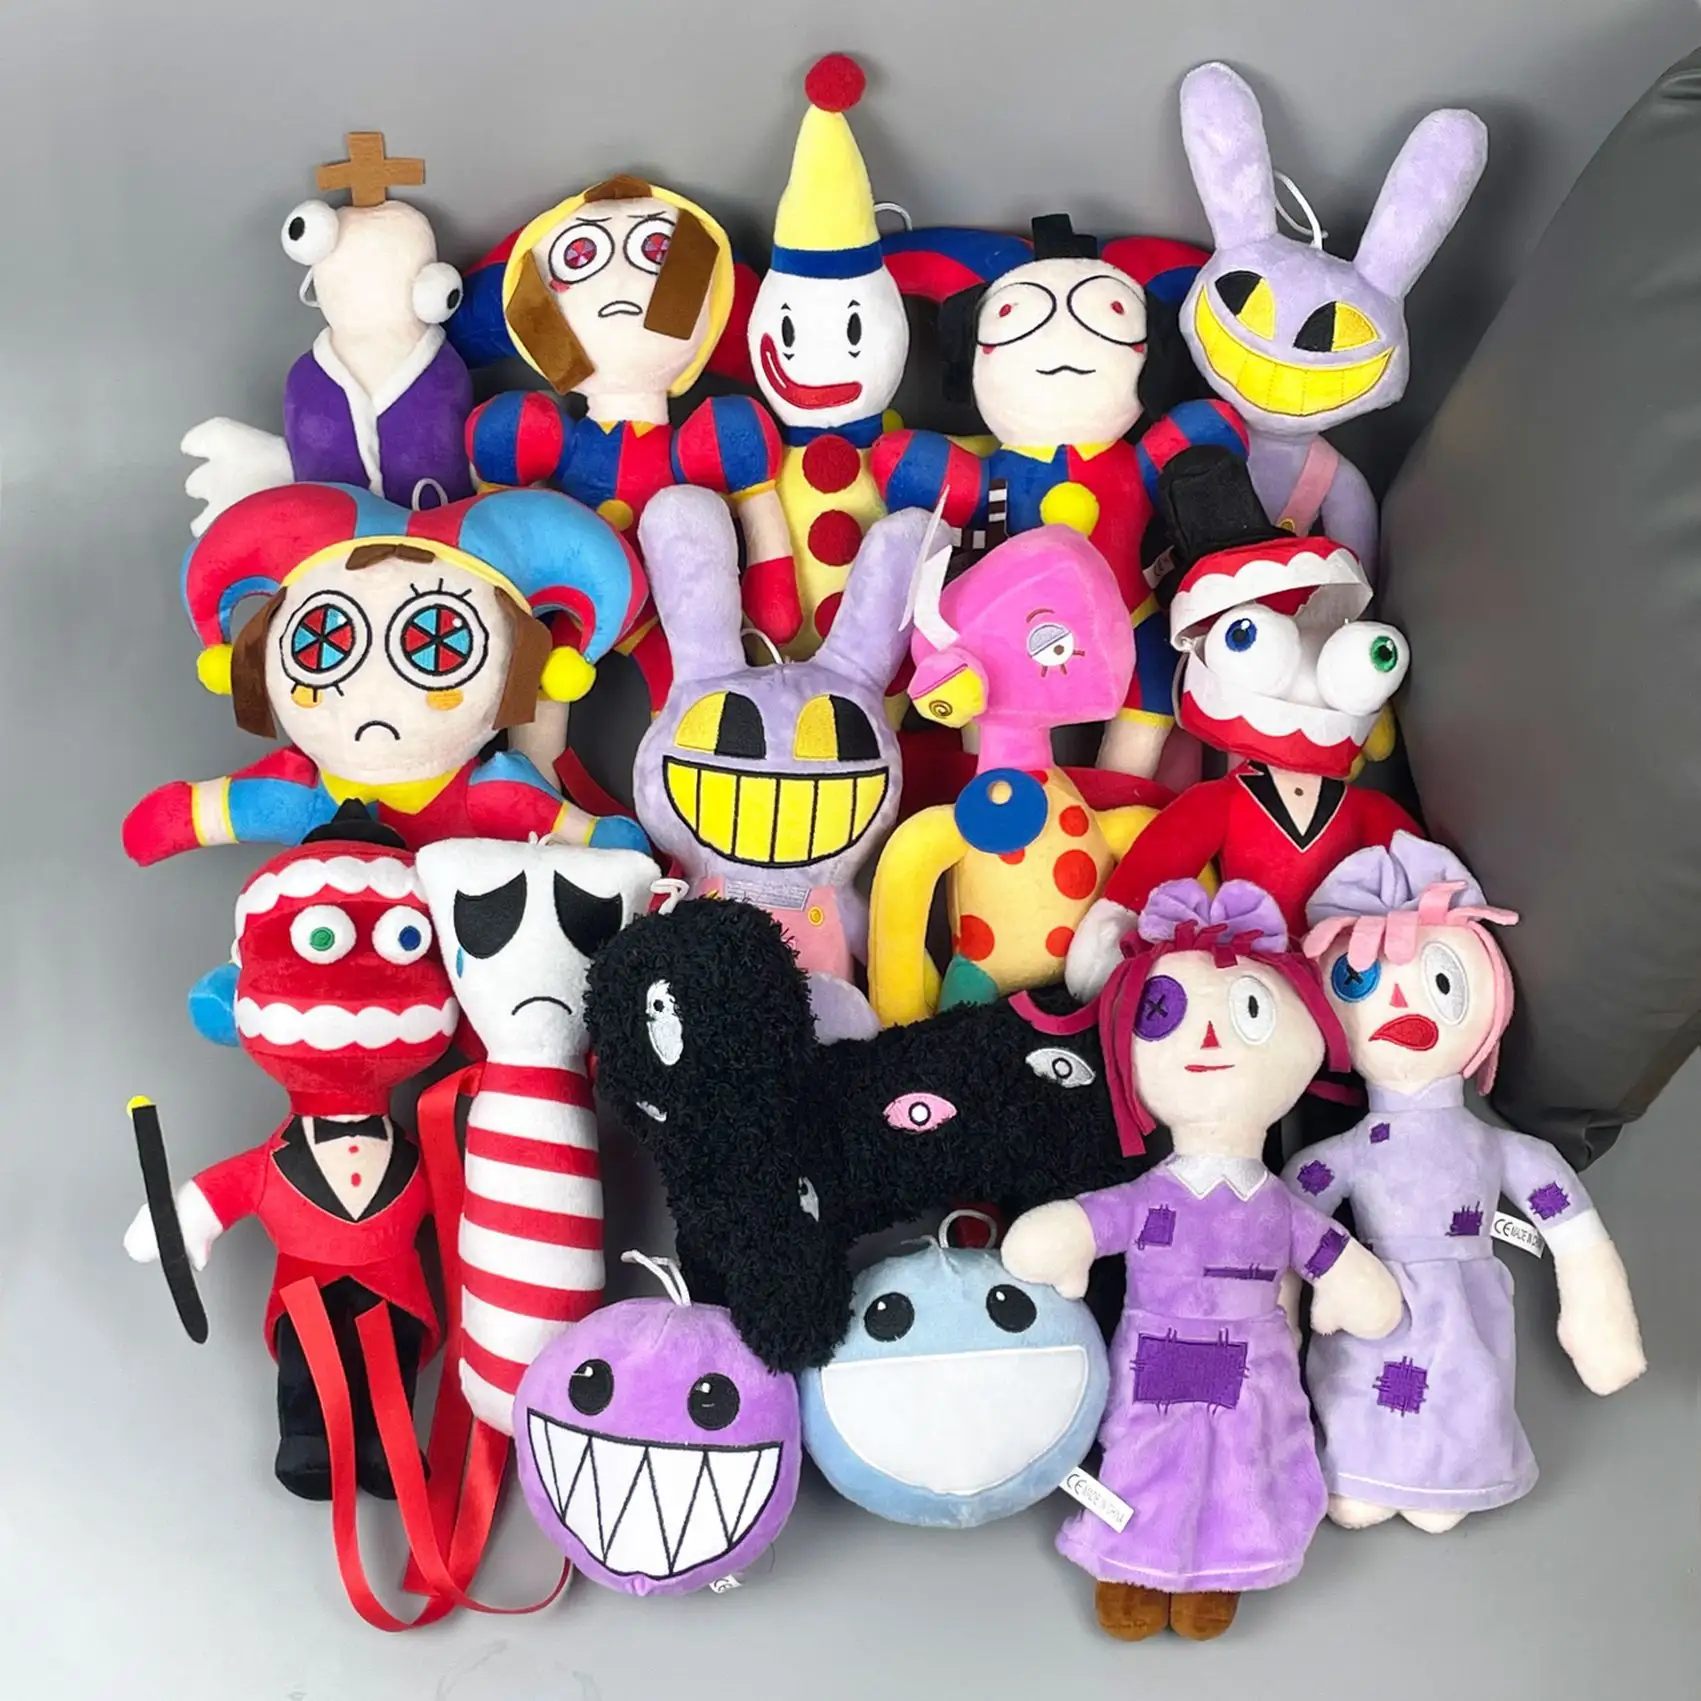 Nuevos juguetes de peluche Personaje de juego de dibujos animados creativos Muñecas suaves The Amazing Digital Circus Jax Plushies